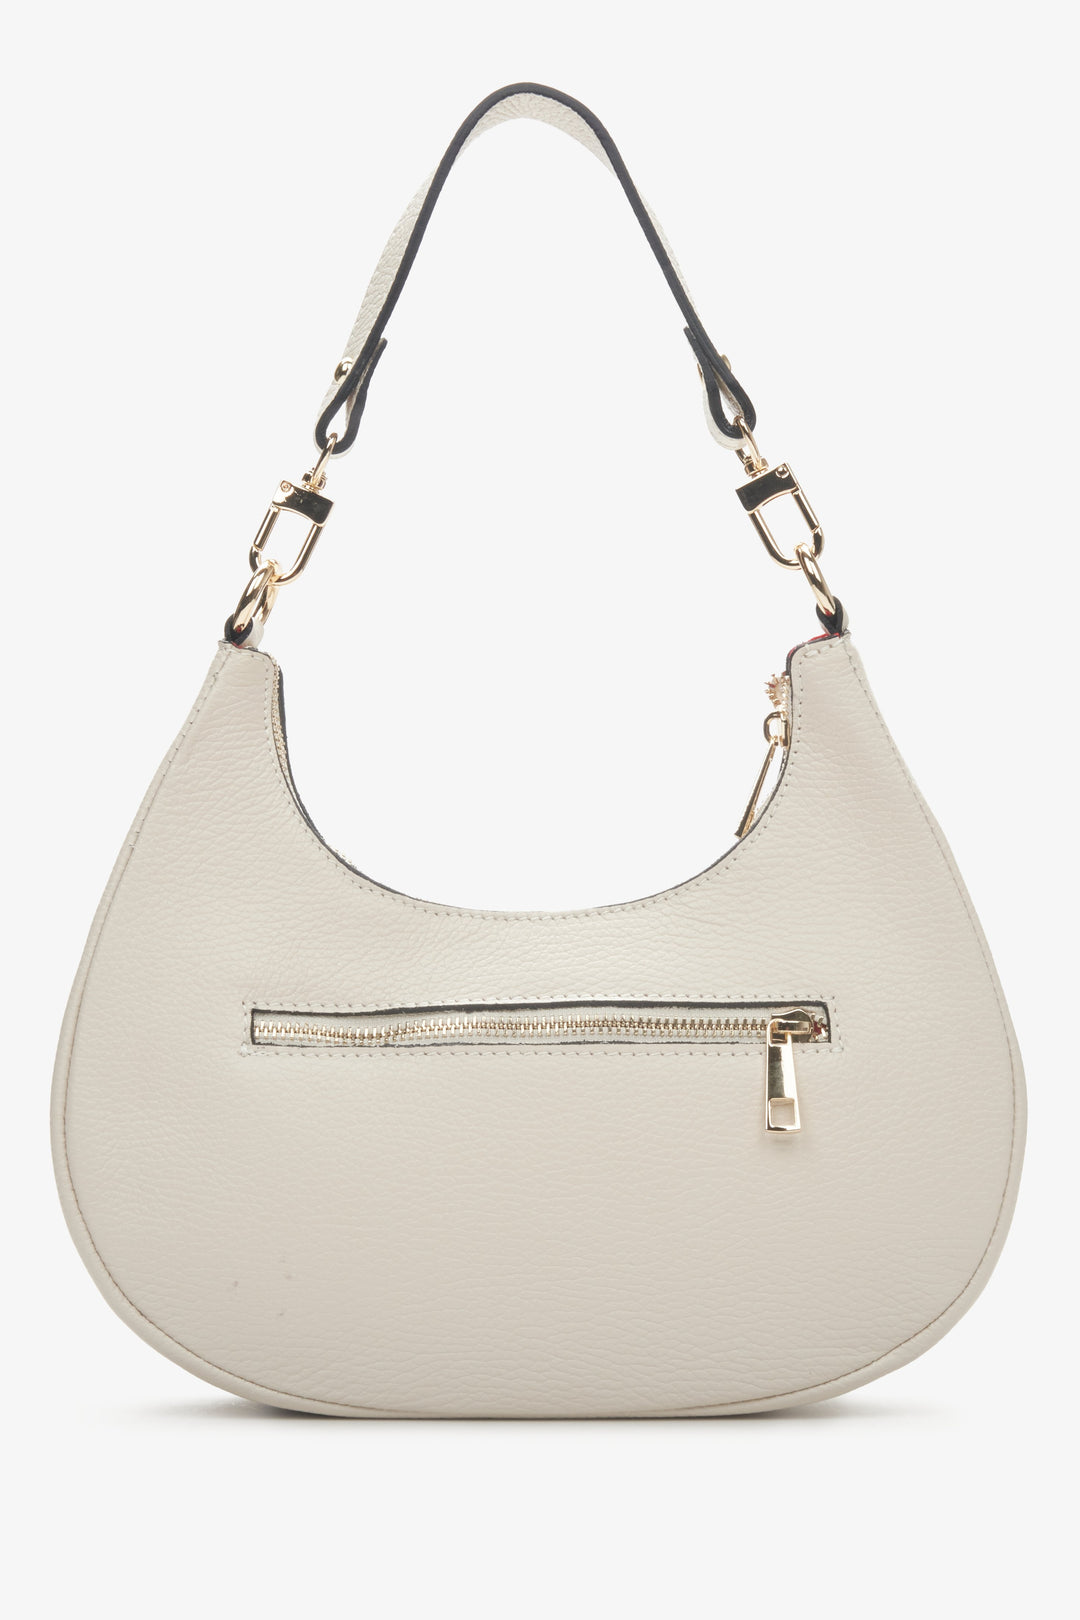 Women's shoulder bag in light beige Estro - reverse.